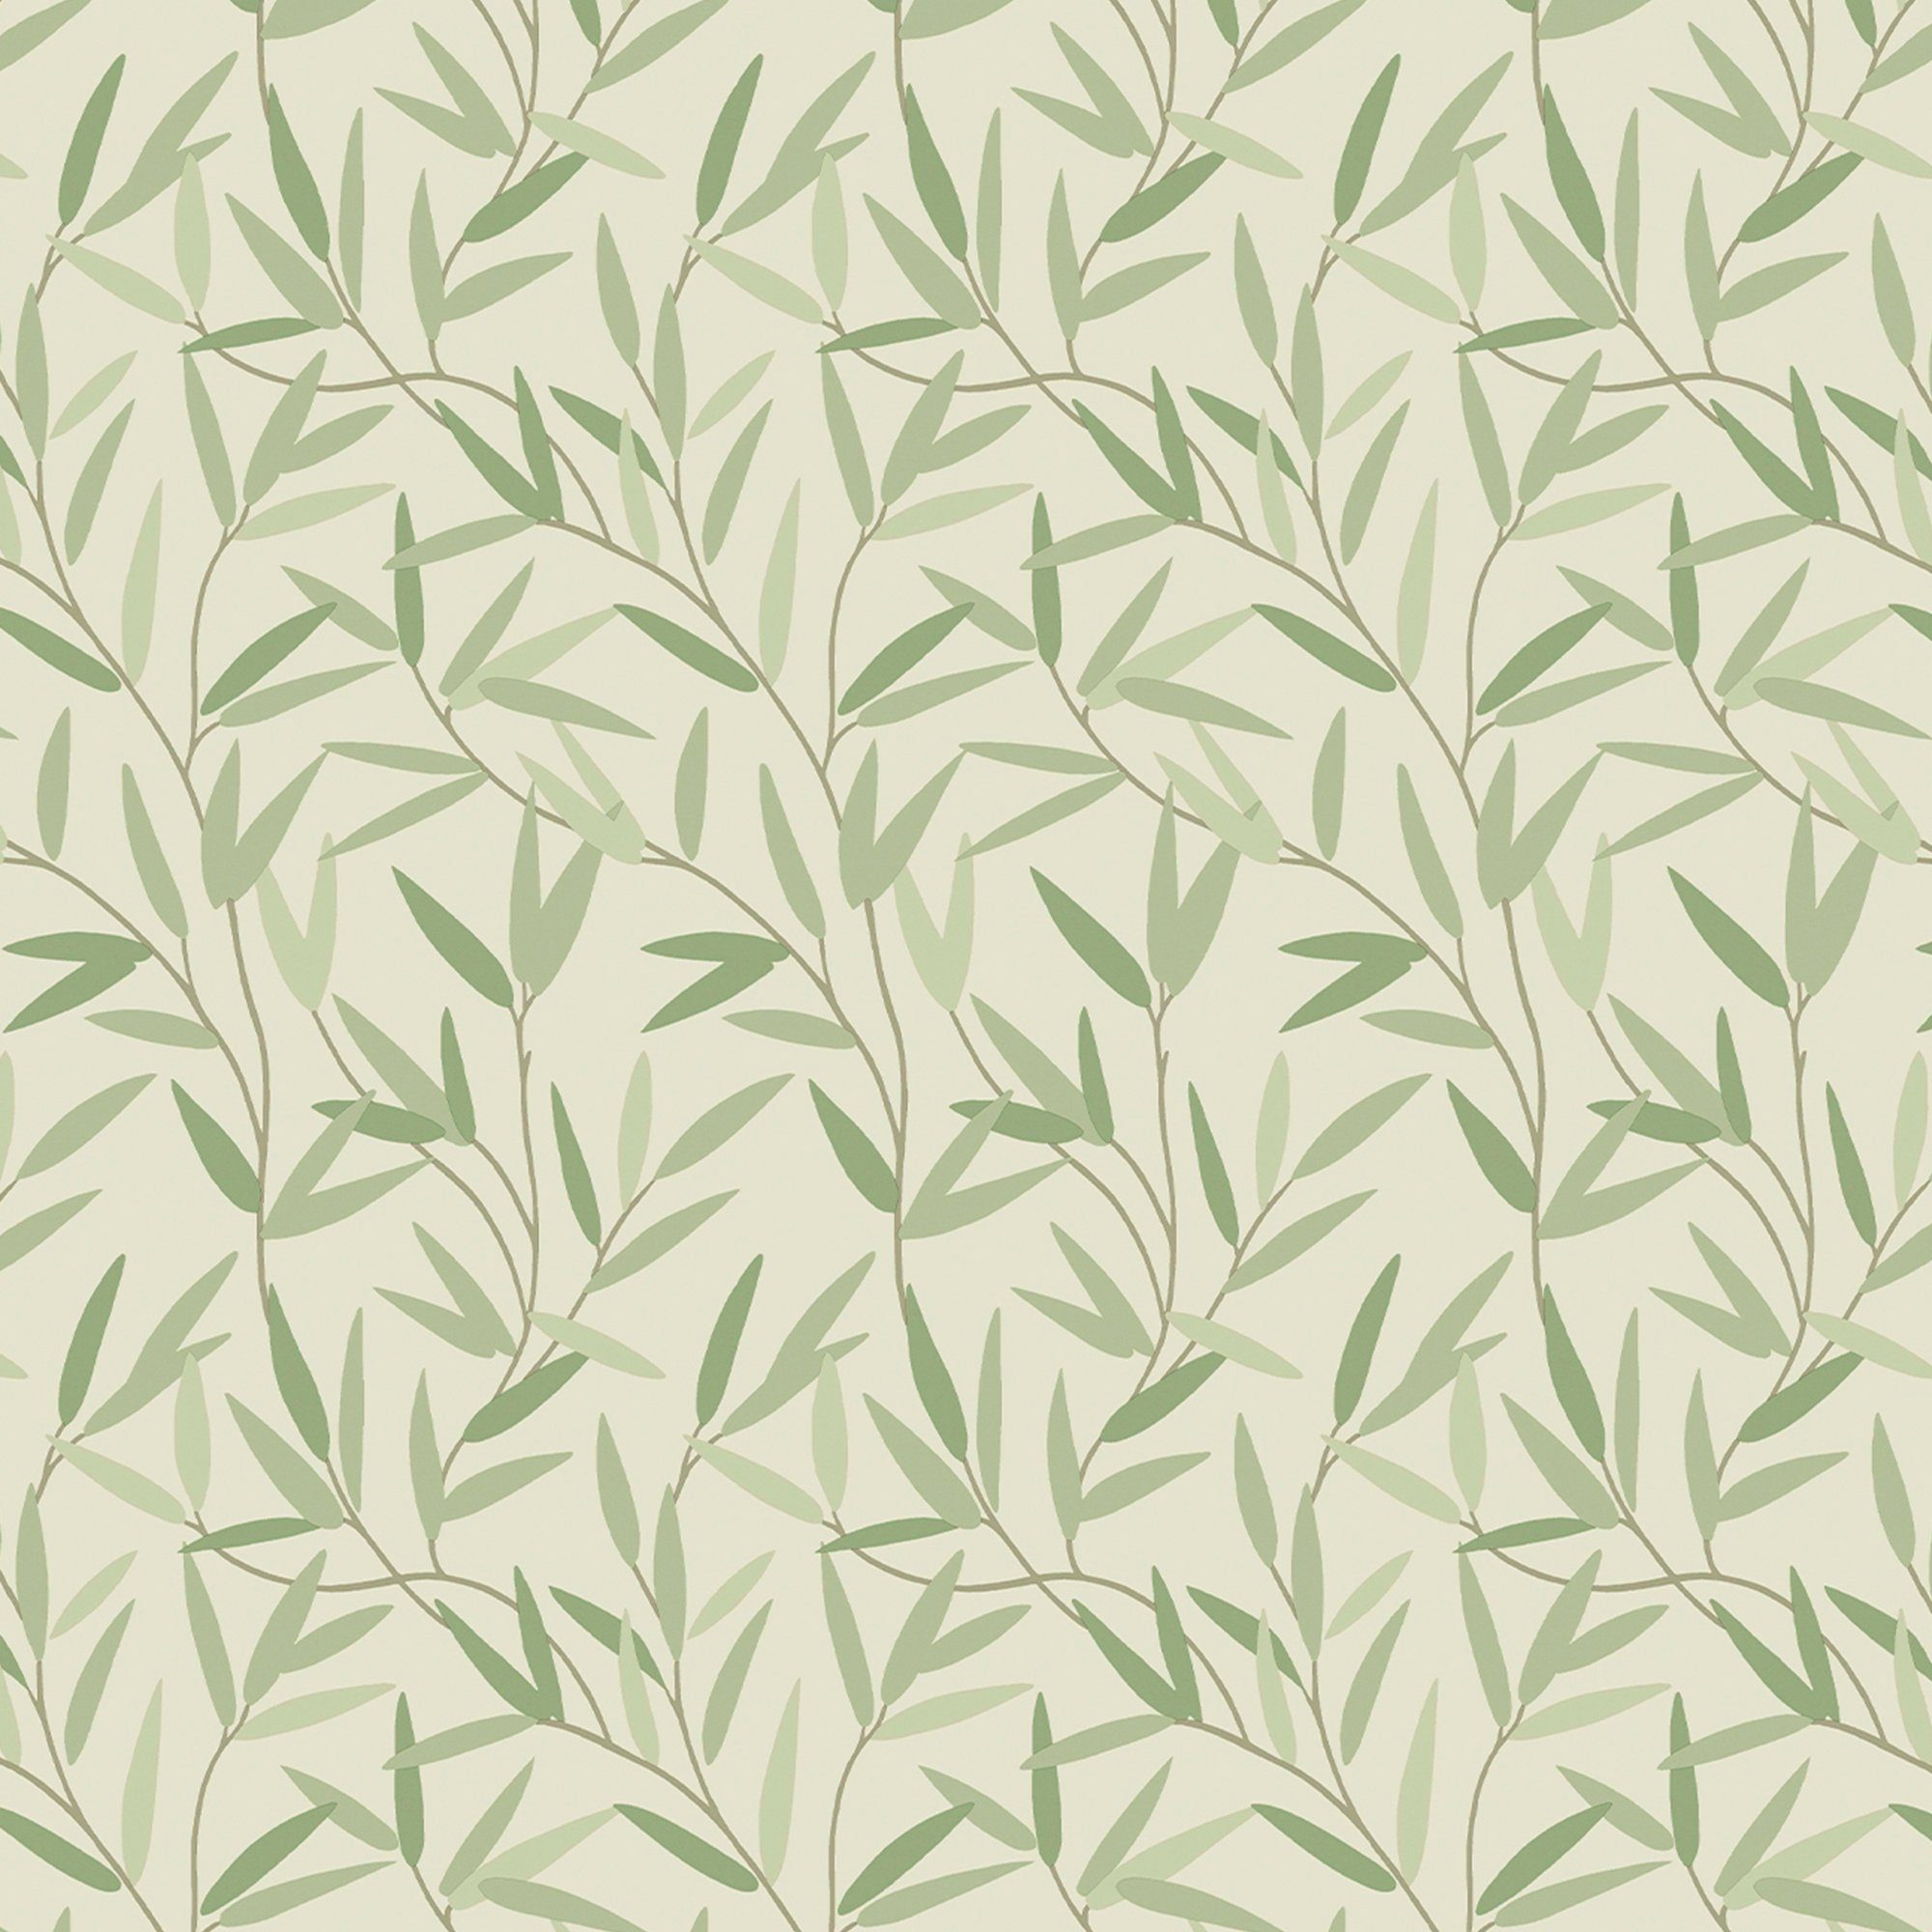 LAURA ASHLEY Vliestapete Willow Leaf, gemustert, FSC® zertifiziert, mit lebhaftem Druck, 10 Meter Länge grün